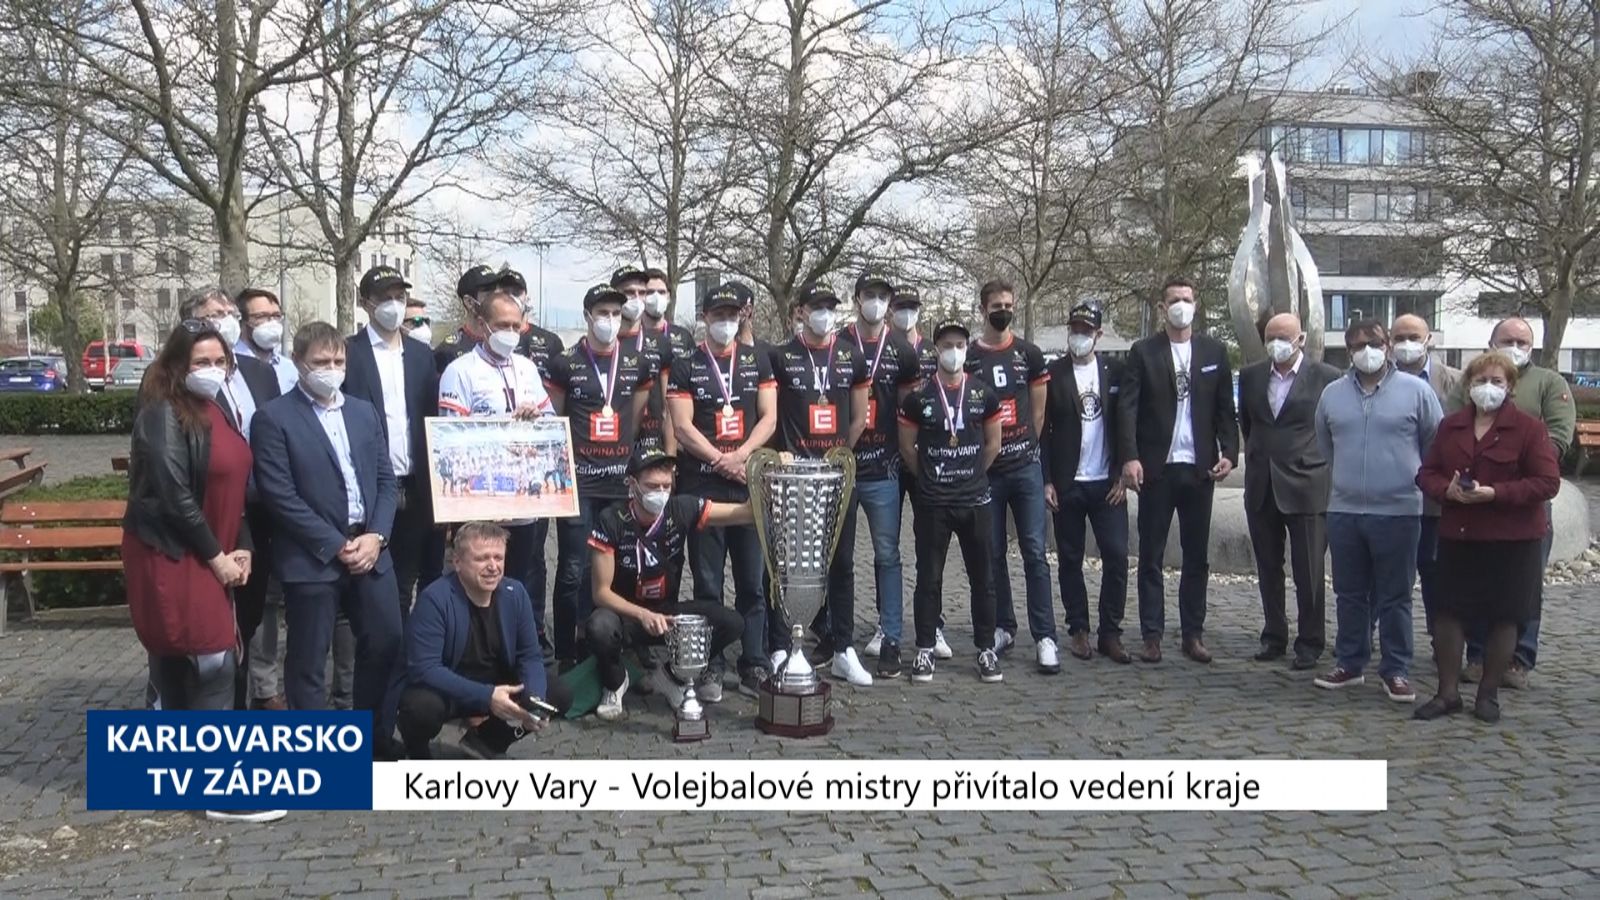 Karlovy Vary: Volejbalové mistry přivítalo vedení kraje (TV Západ)